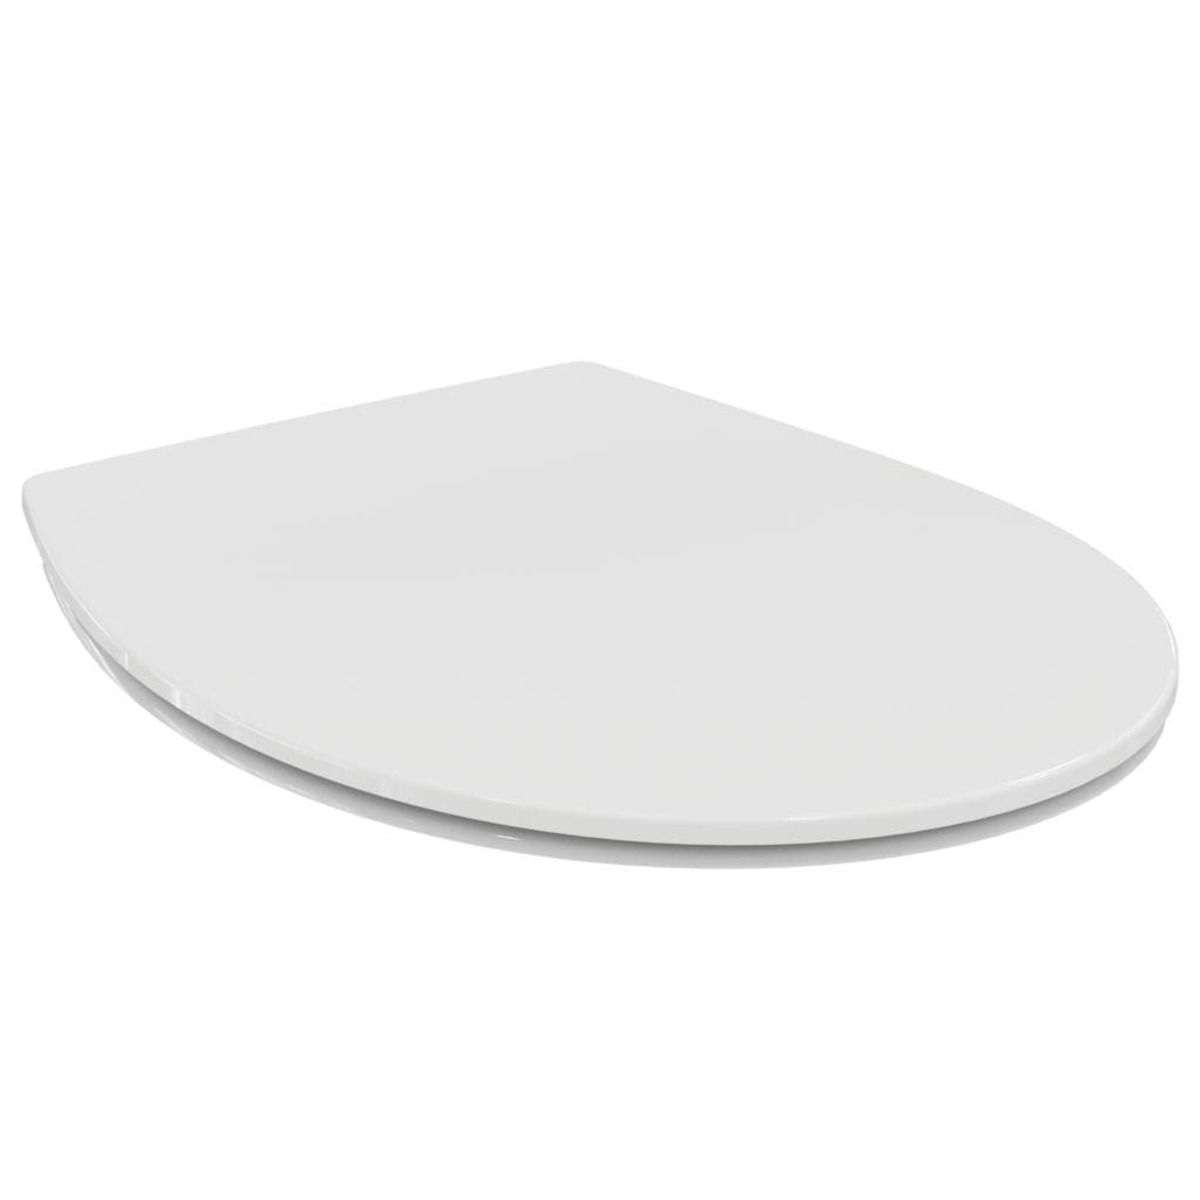 Wc prkénko Ideal Standard UNIVERSAL ECO duroplast bílá E131601 - Siko - koupelny - kuchyně